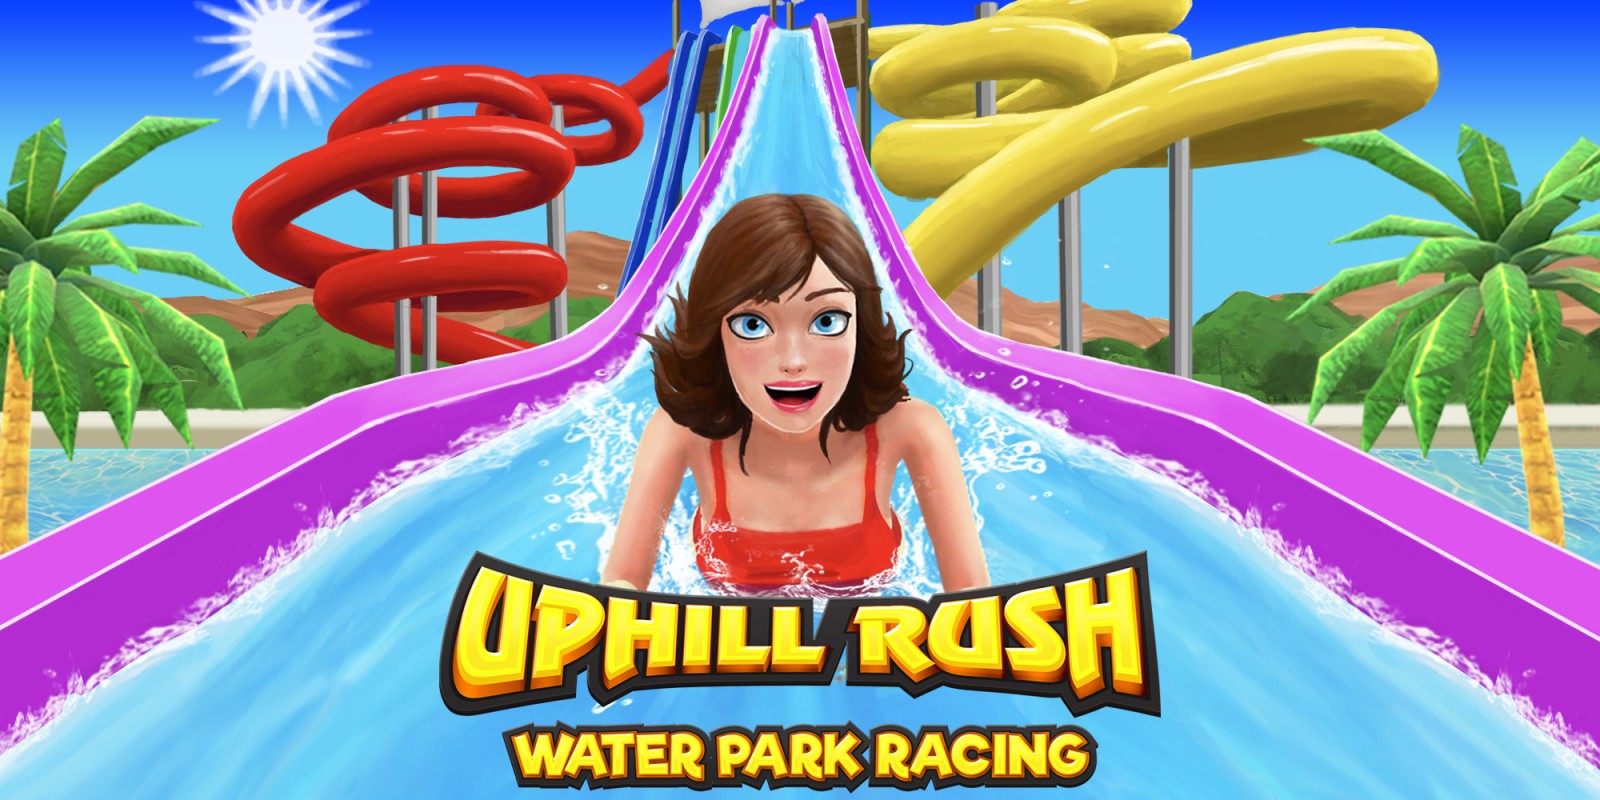 Uphill Rush Water Park Racing